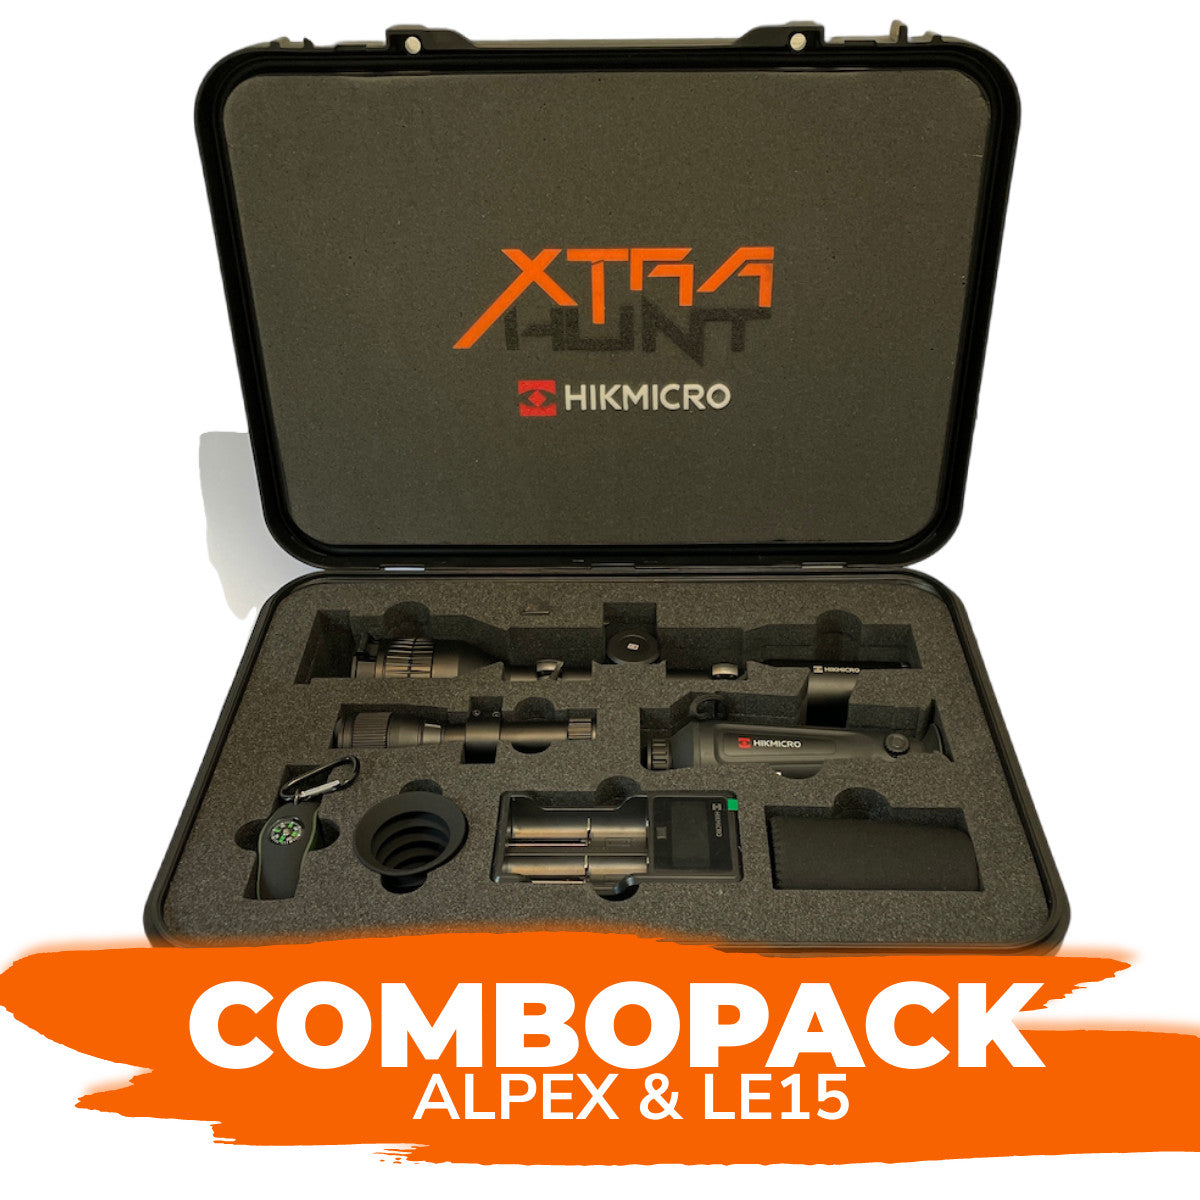 Combopack - Alpex & LE15